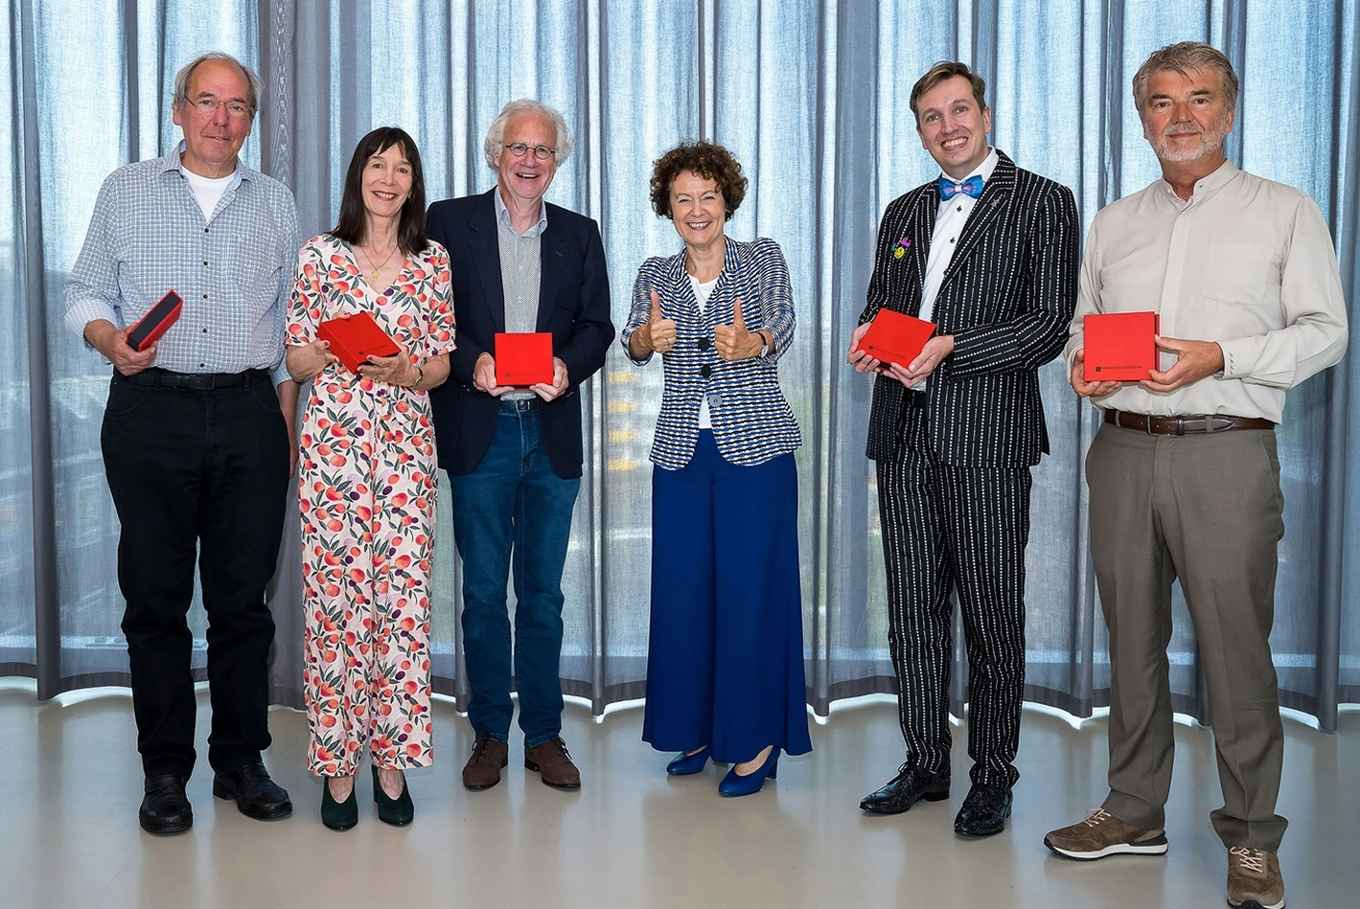 From left to right: Hotze Mulder, Annelies Dijkstra, Peter Vonk, Geert ten Dam, Guido de Wilde en Peter Sloot